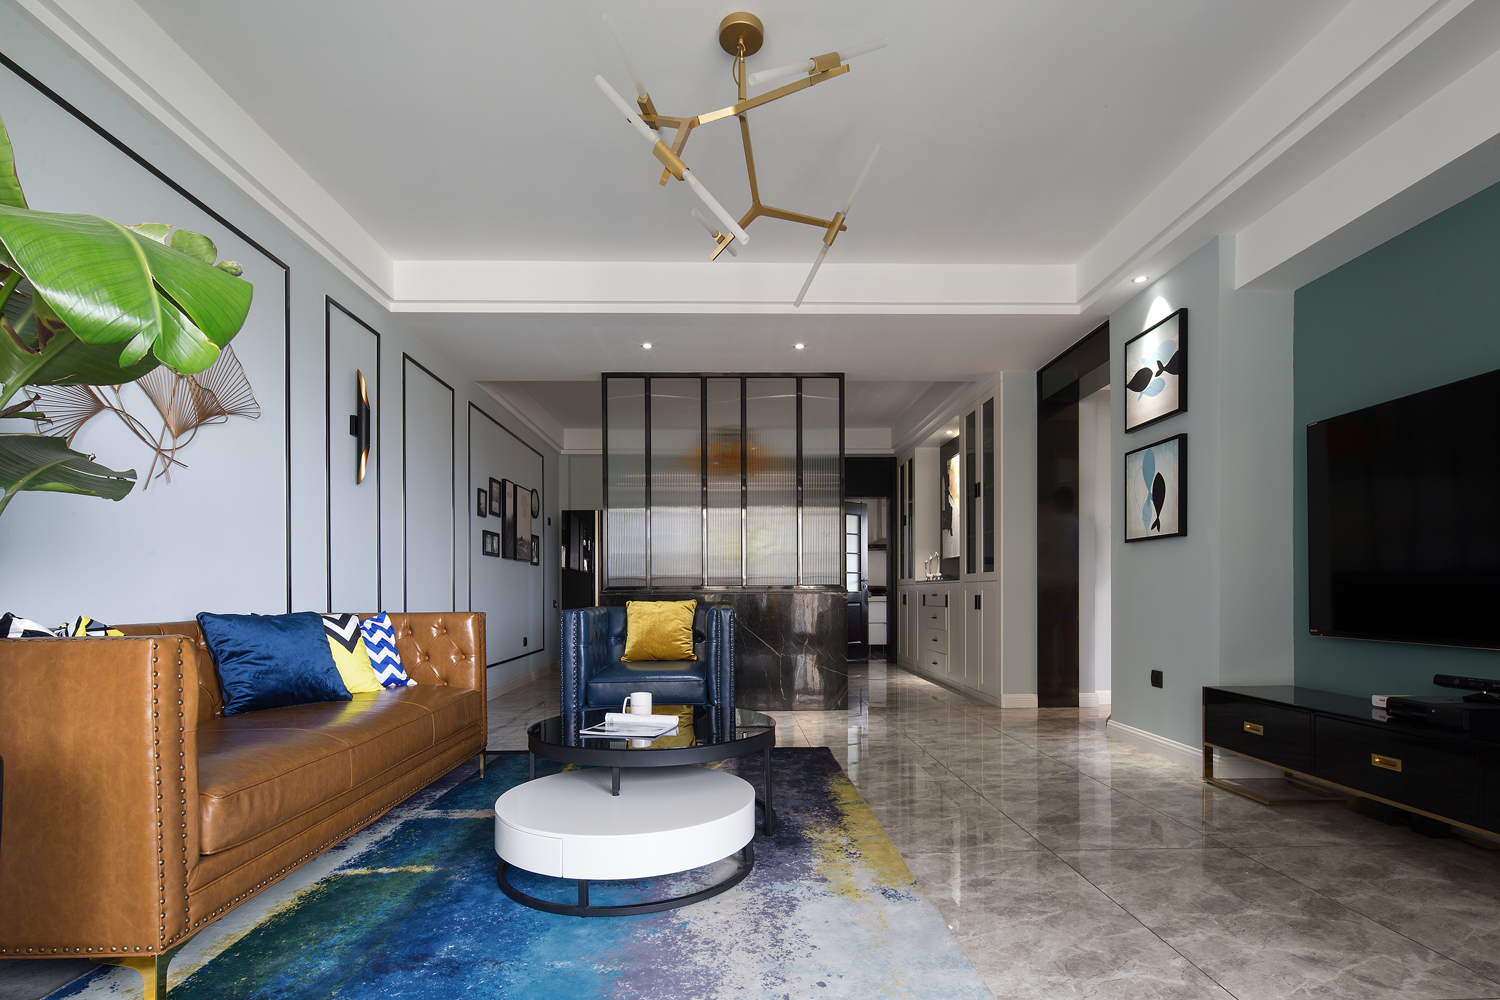 客厅沙发装修效果图现代清新憧憬未来的幸福模样客厅现代简约客厅设计图片赏析